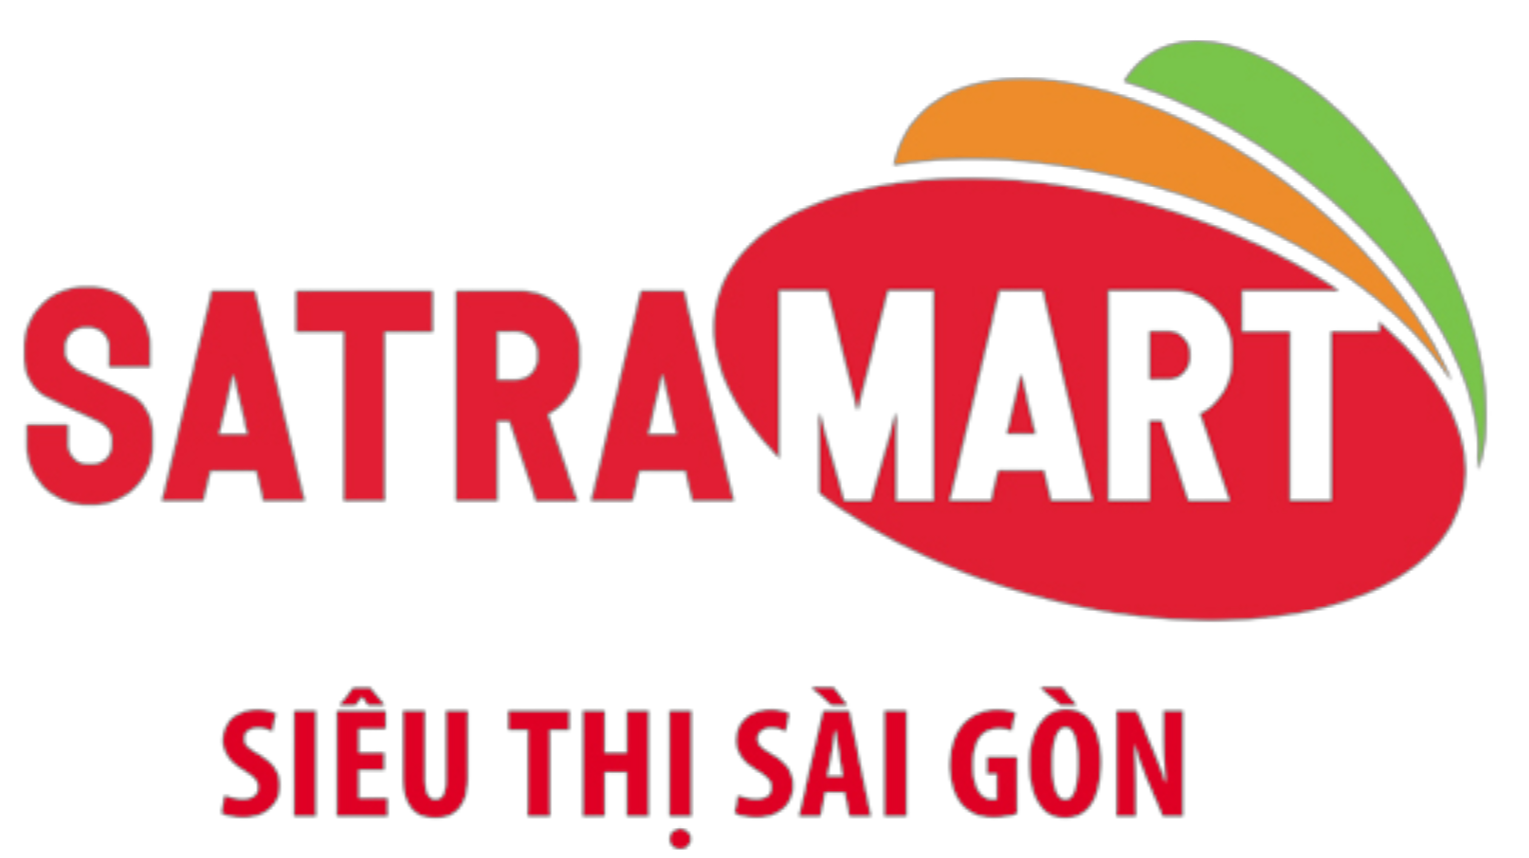 SatraMart